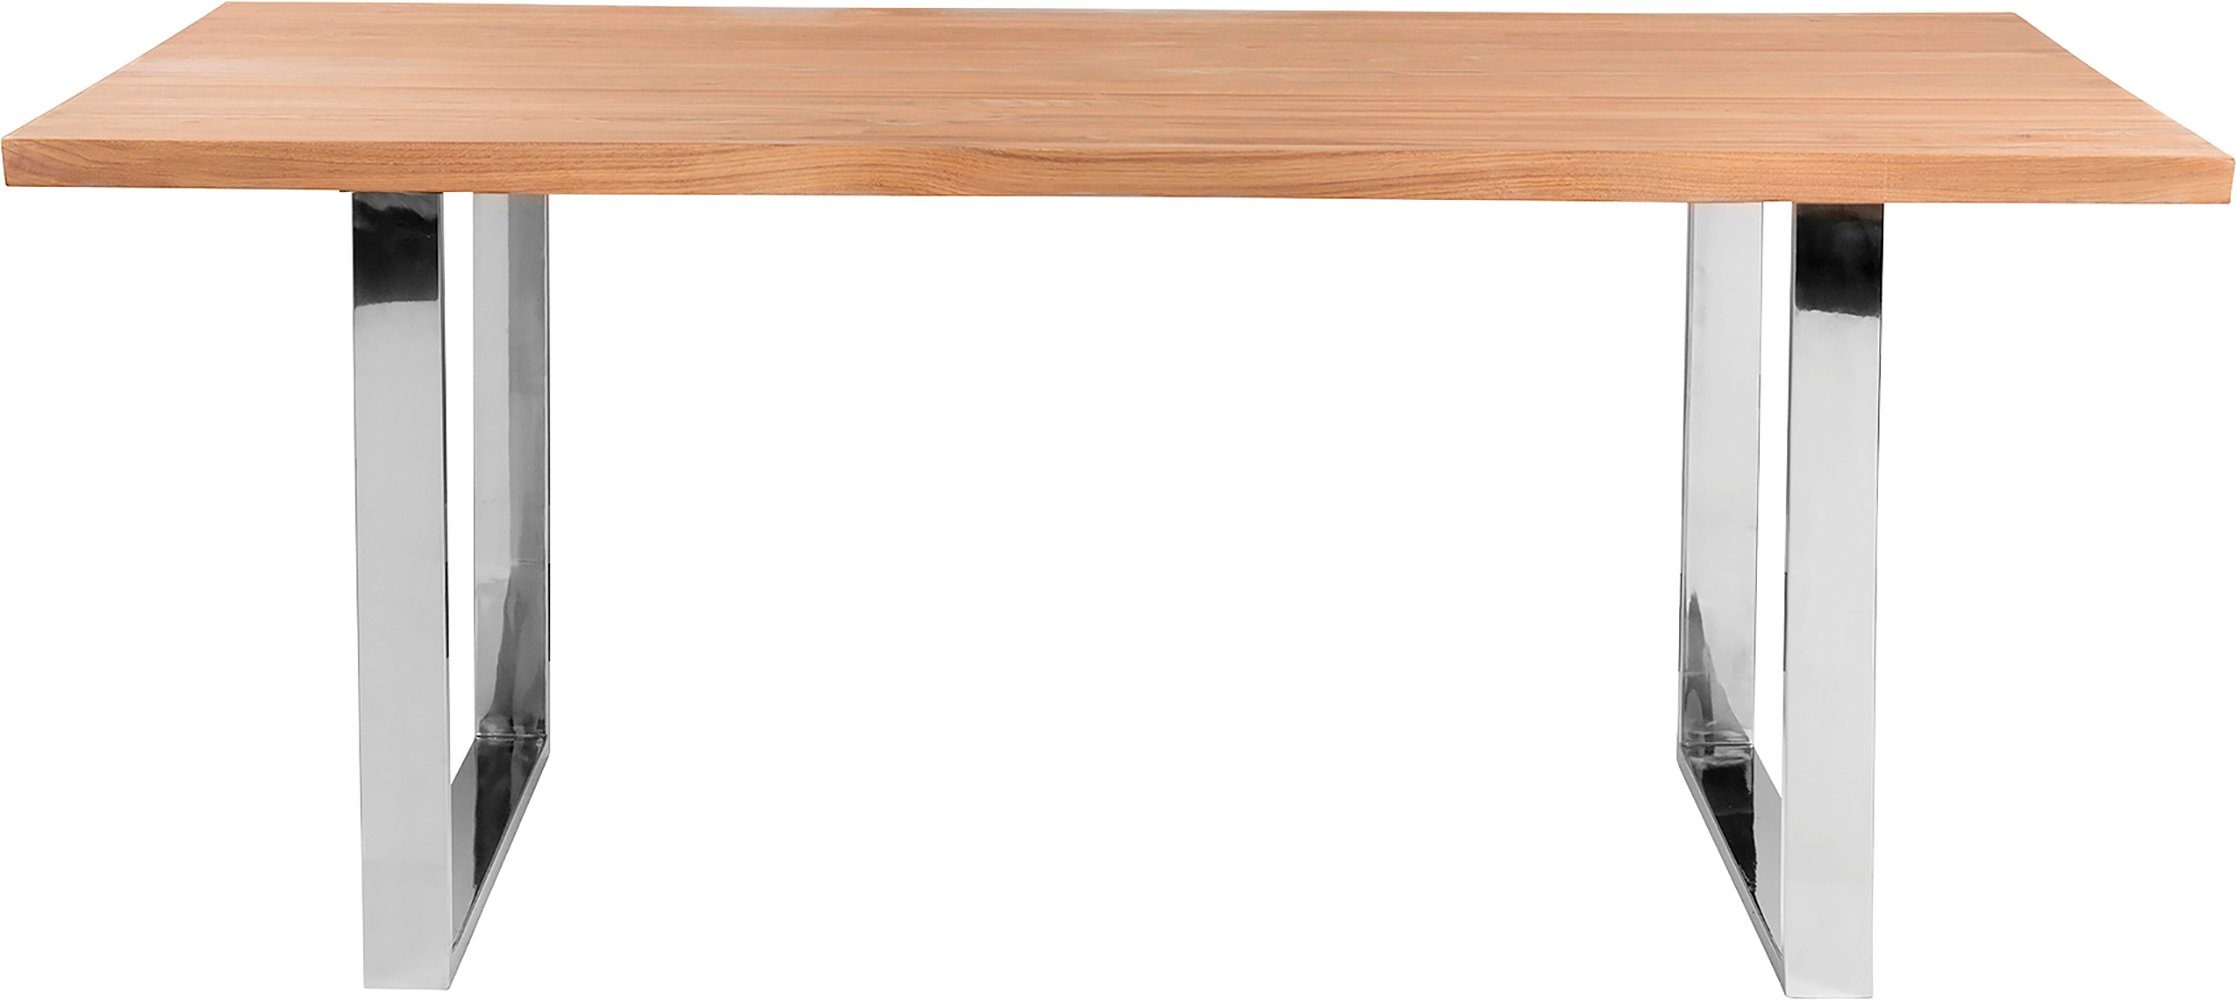 Fink Esstisch, Mit seitlich geschwungener Form, massive Tischplatte, weiß geölt